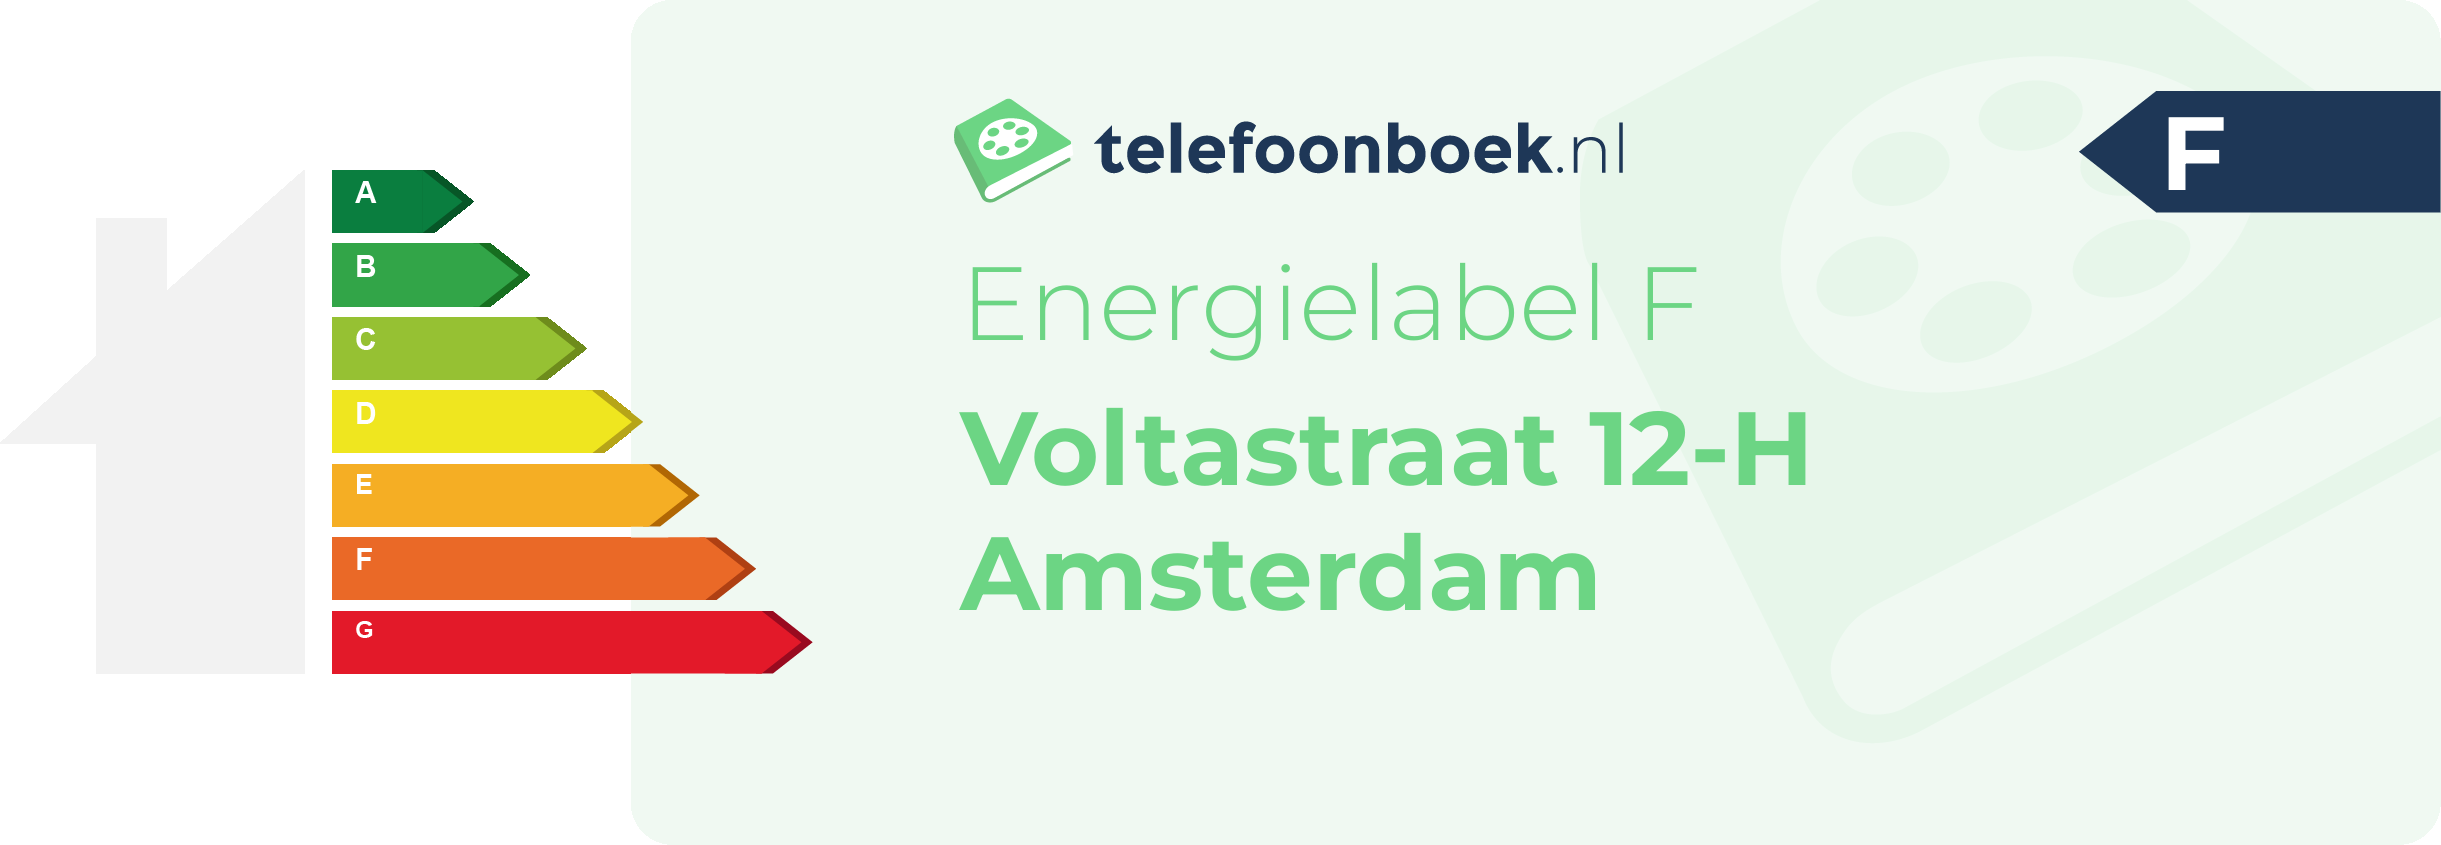 Energielabel Voltastraat 12-H Amsterdam